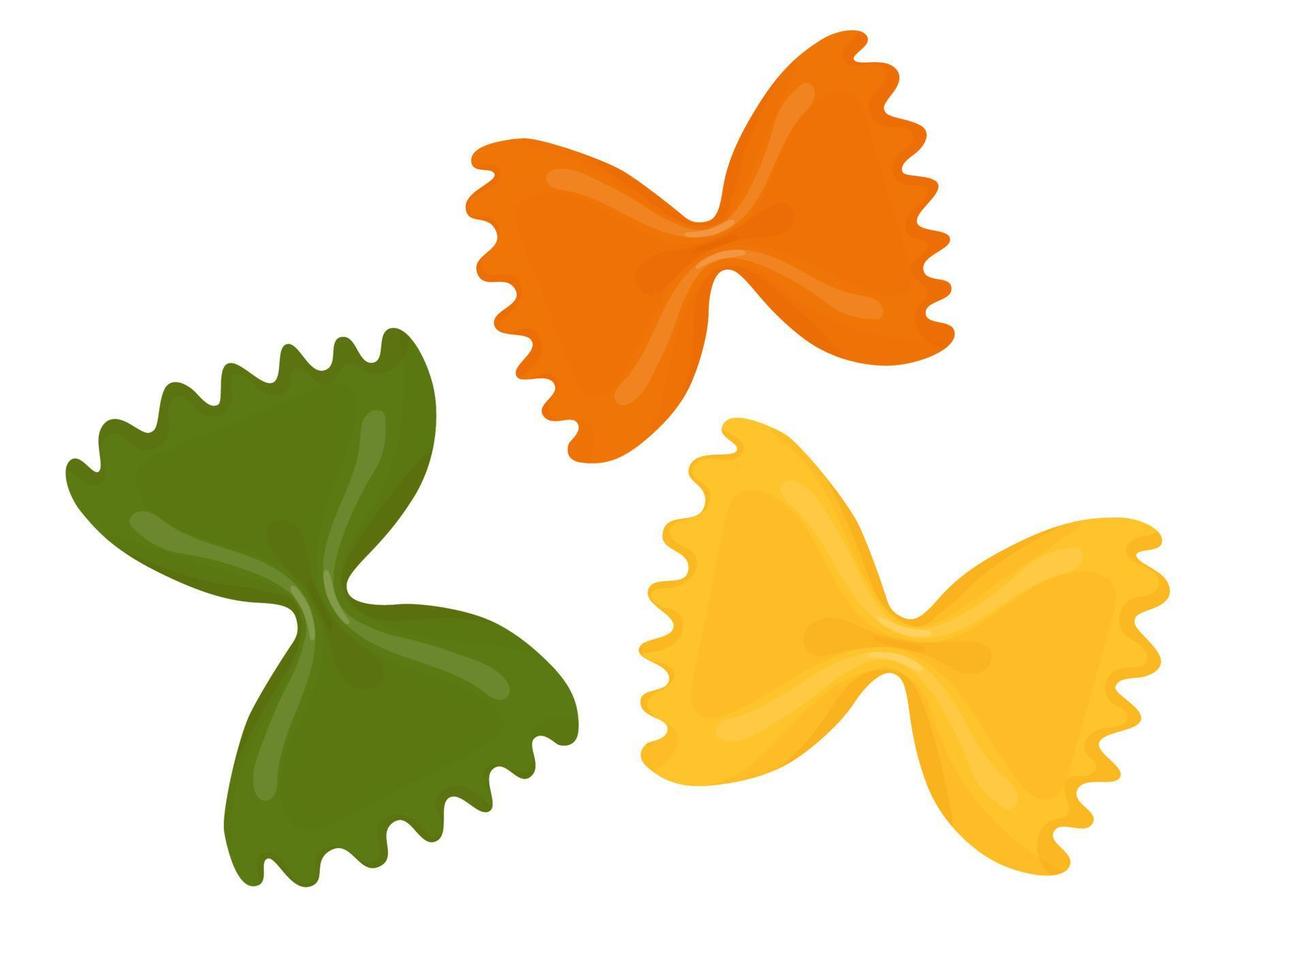 farfalle di pasta. illustrazione del fumetto di pasta italiana isolata su fondo bianco. vettore